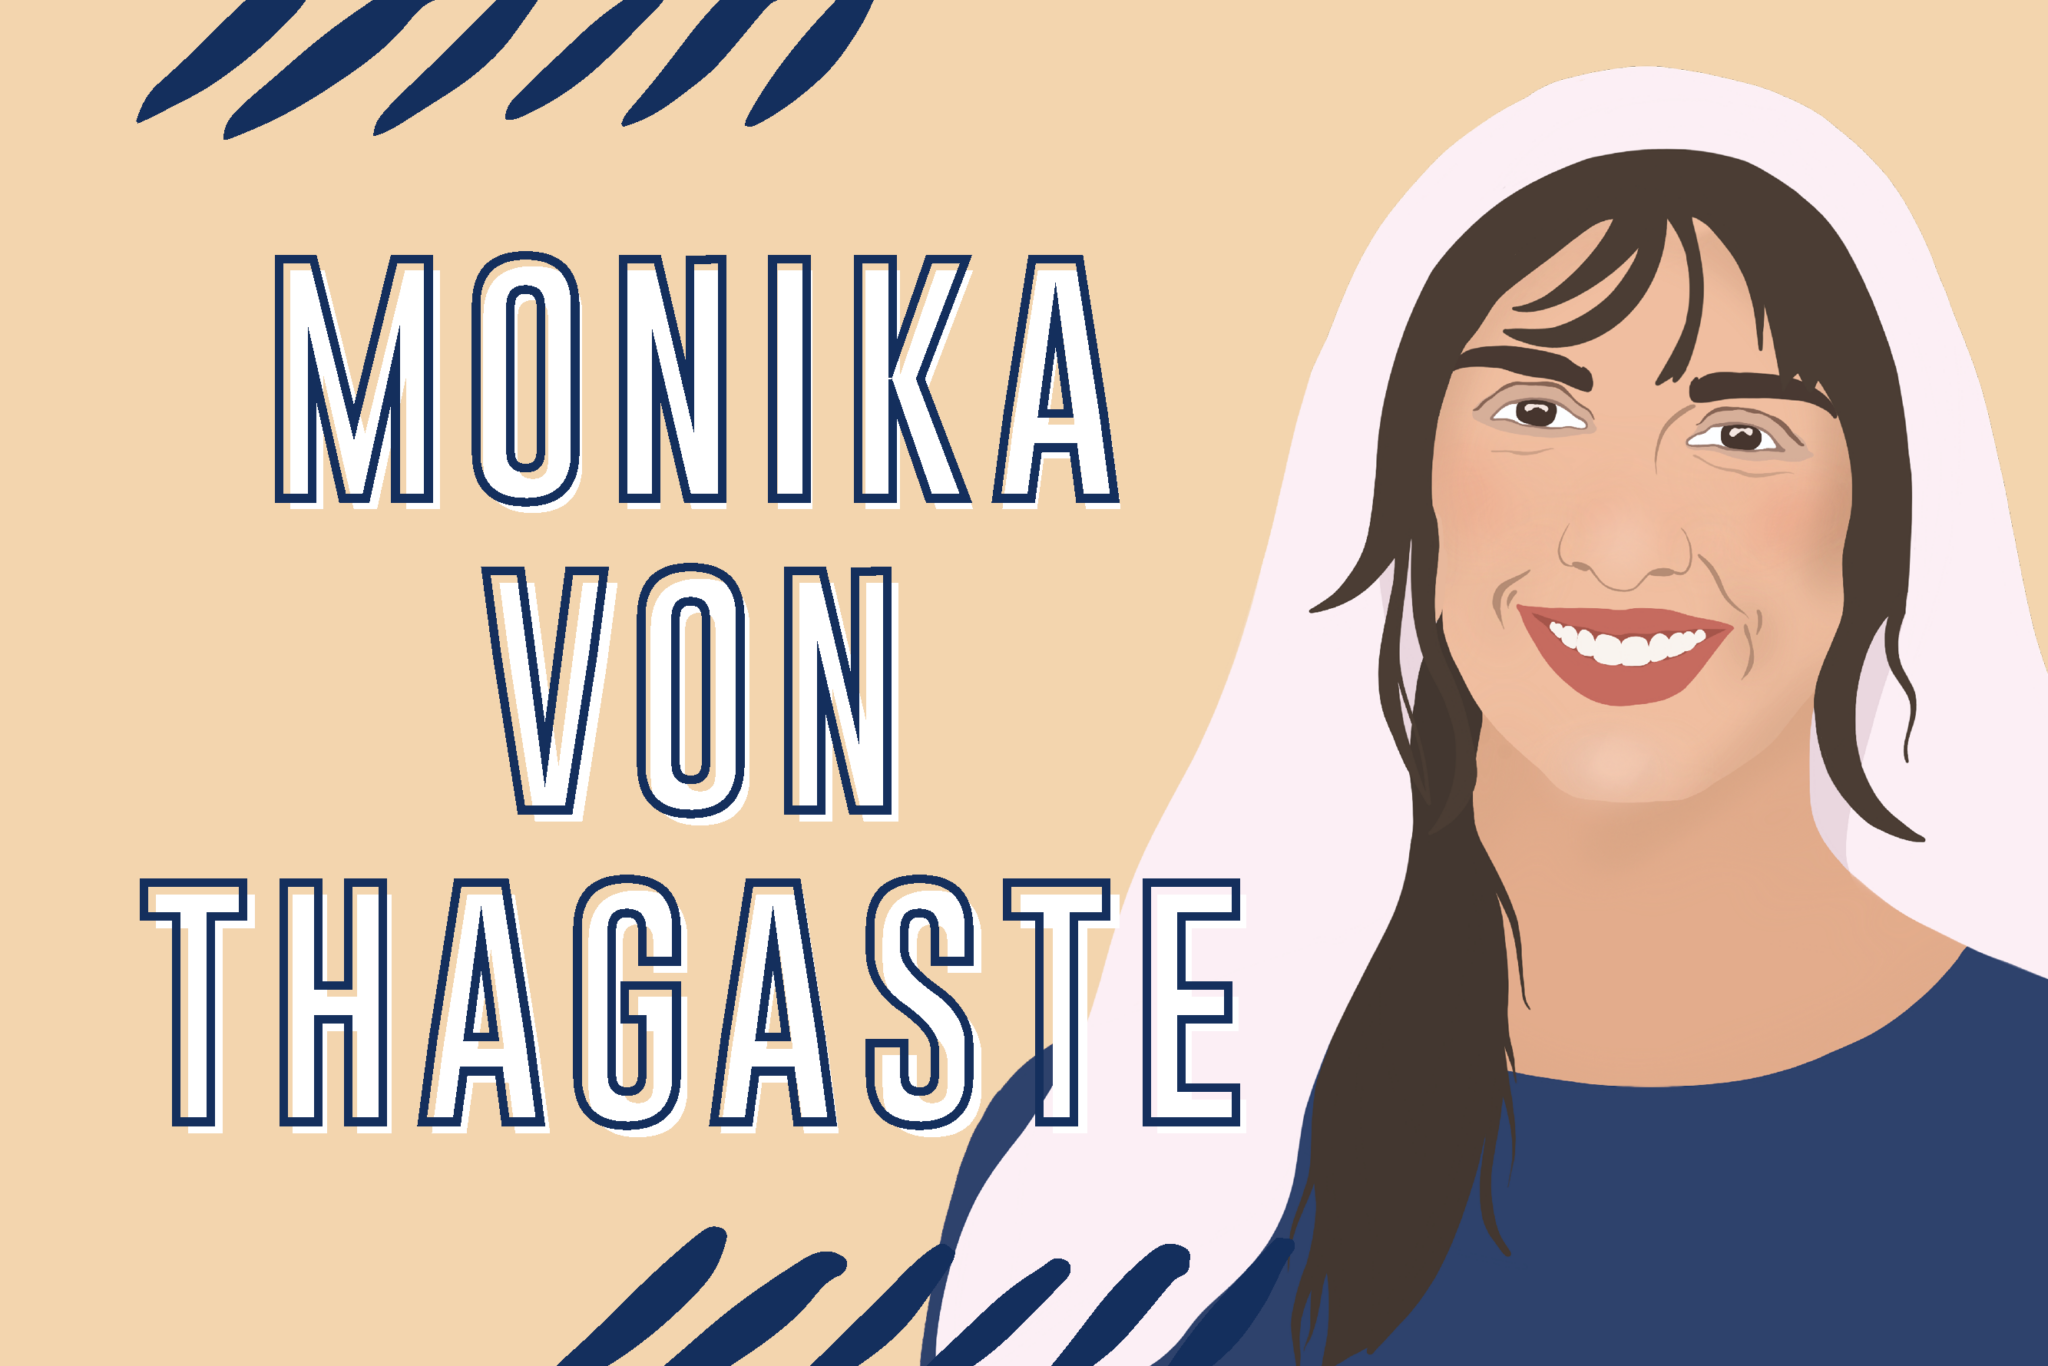 Heilige Monika von Thagaste